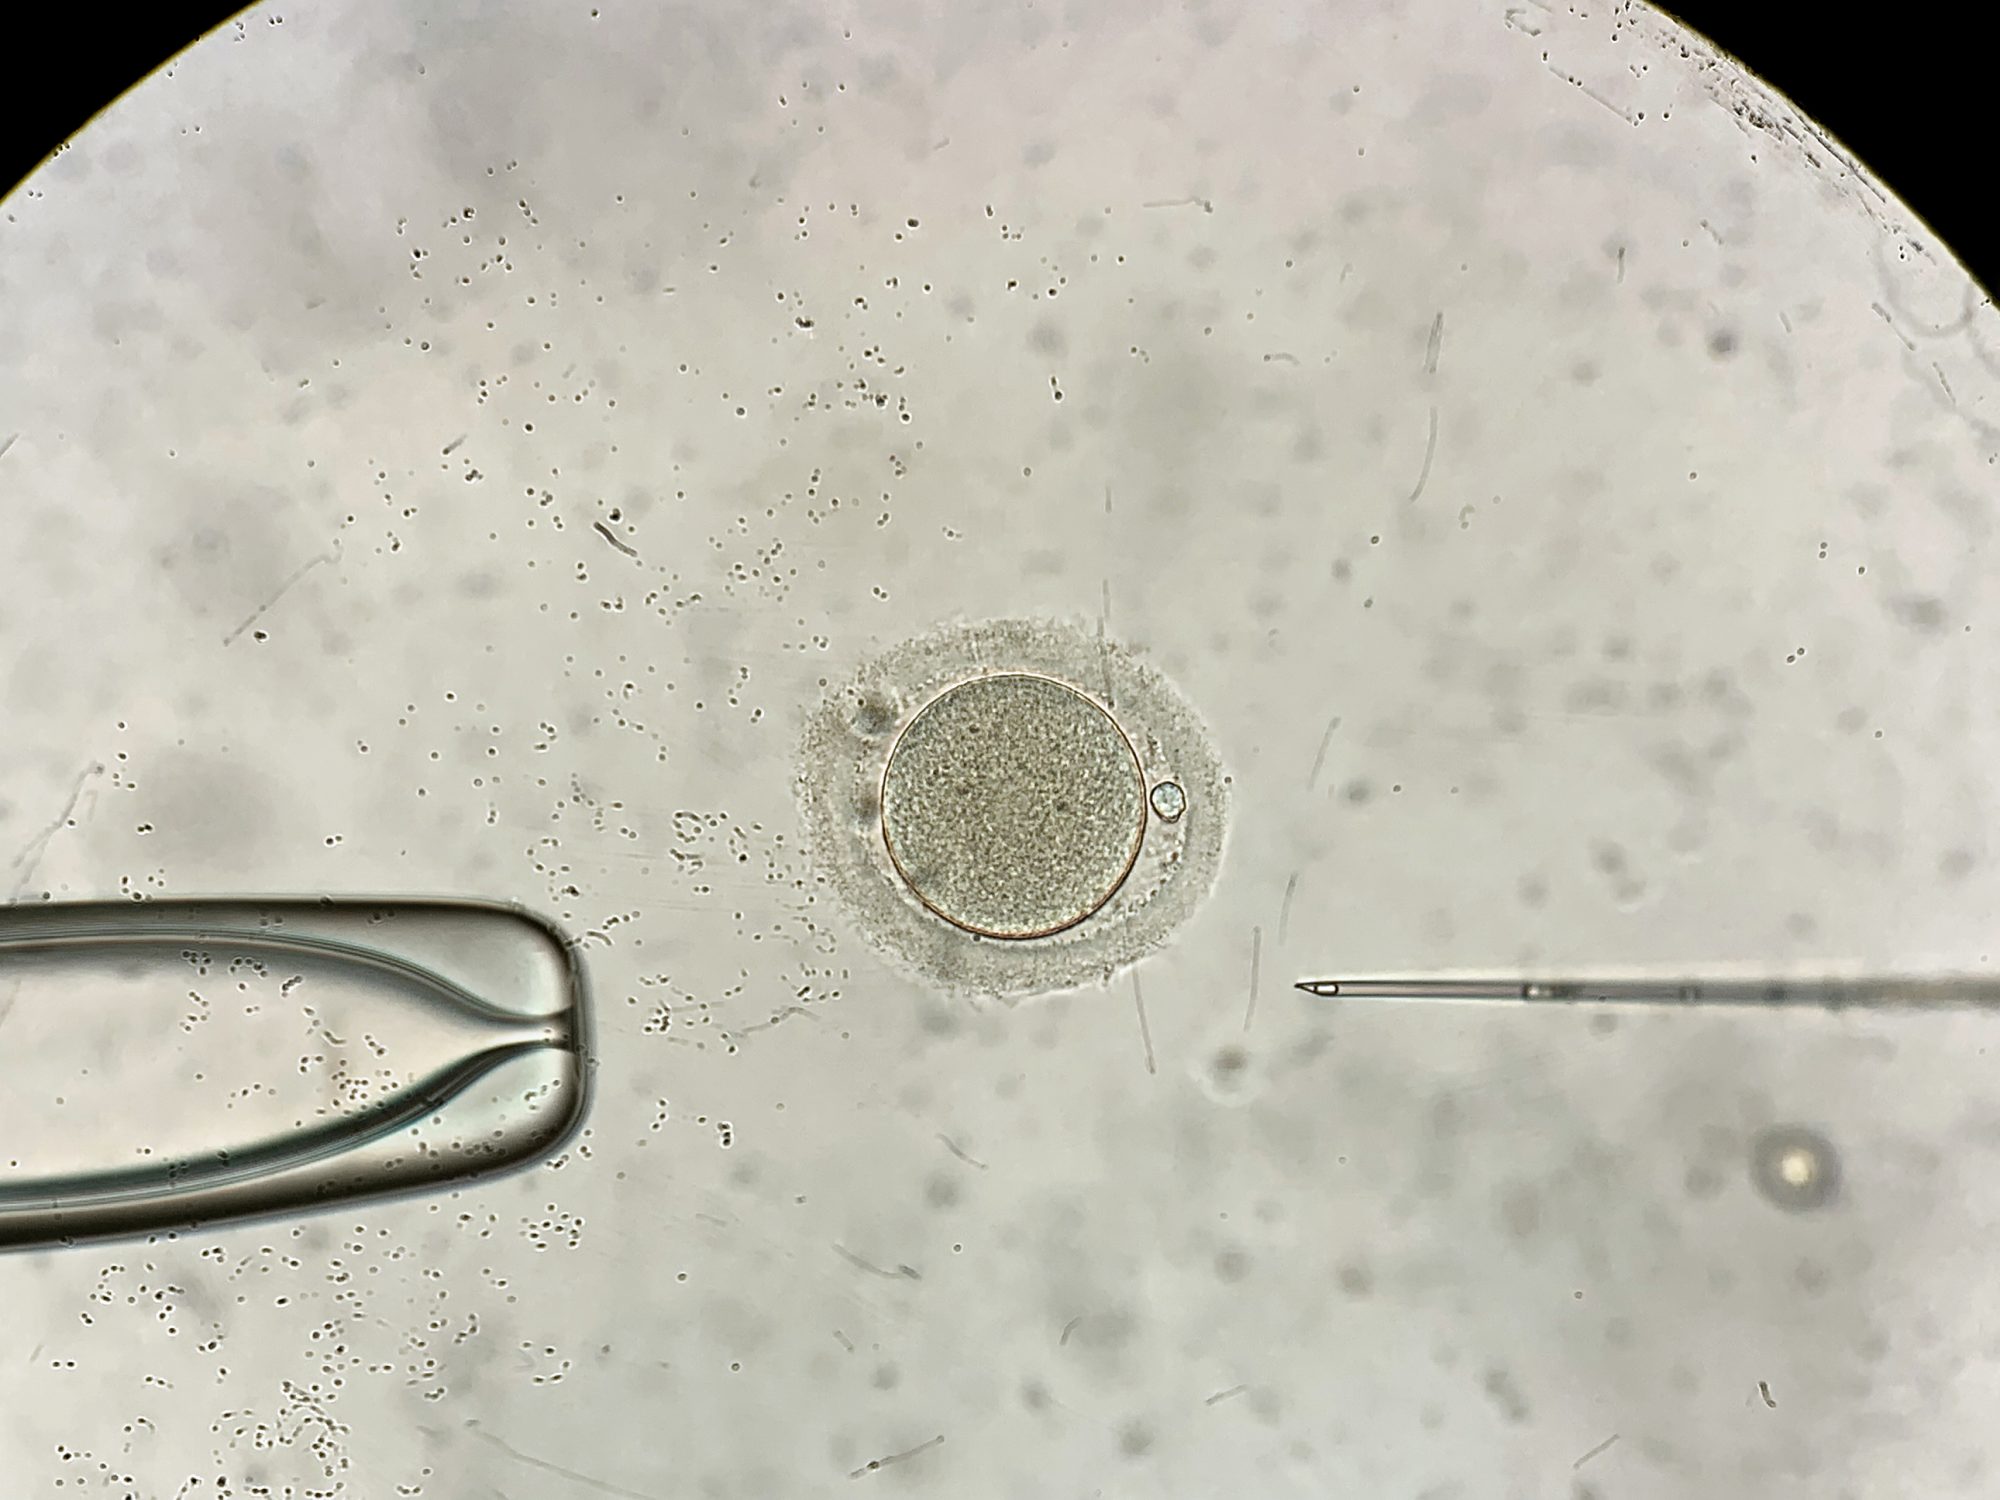 View through microscope at in vitro fertilization process